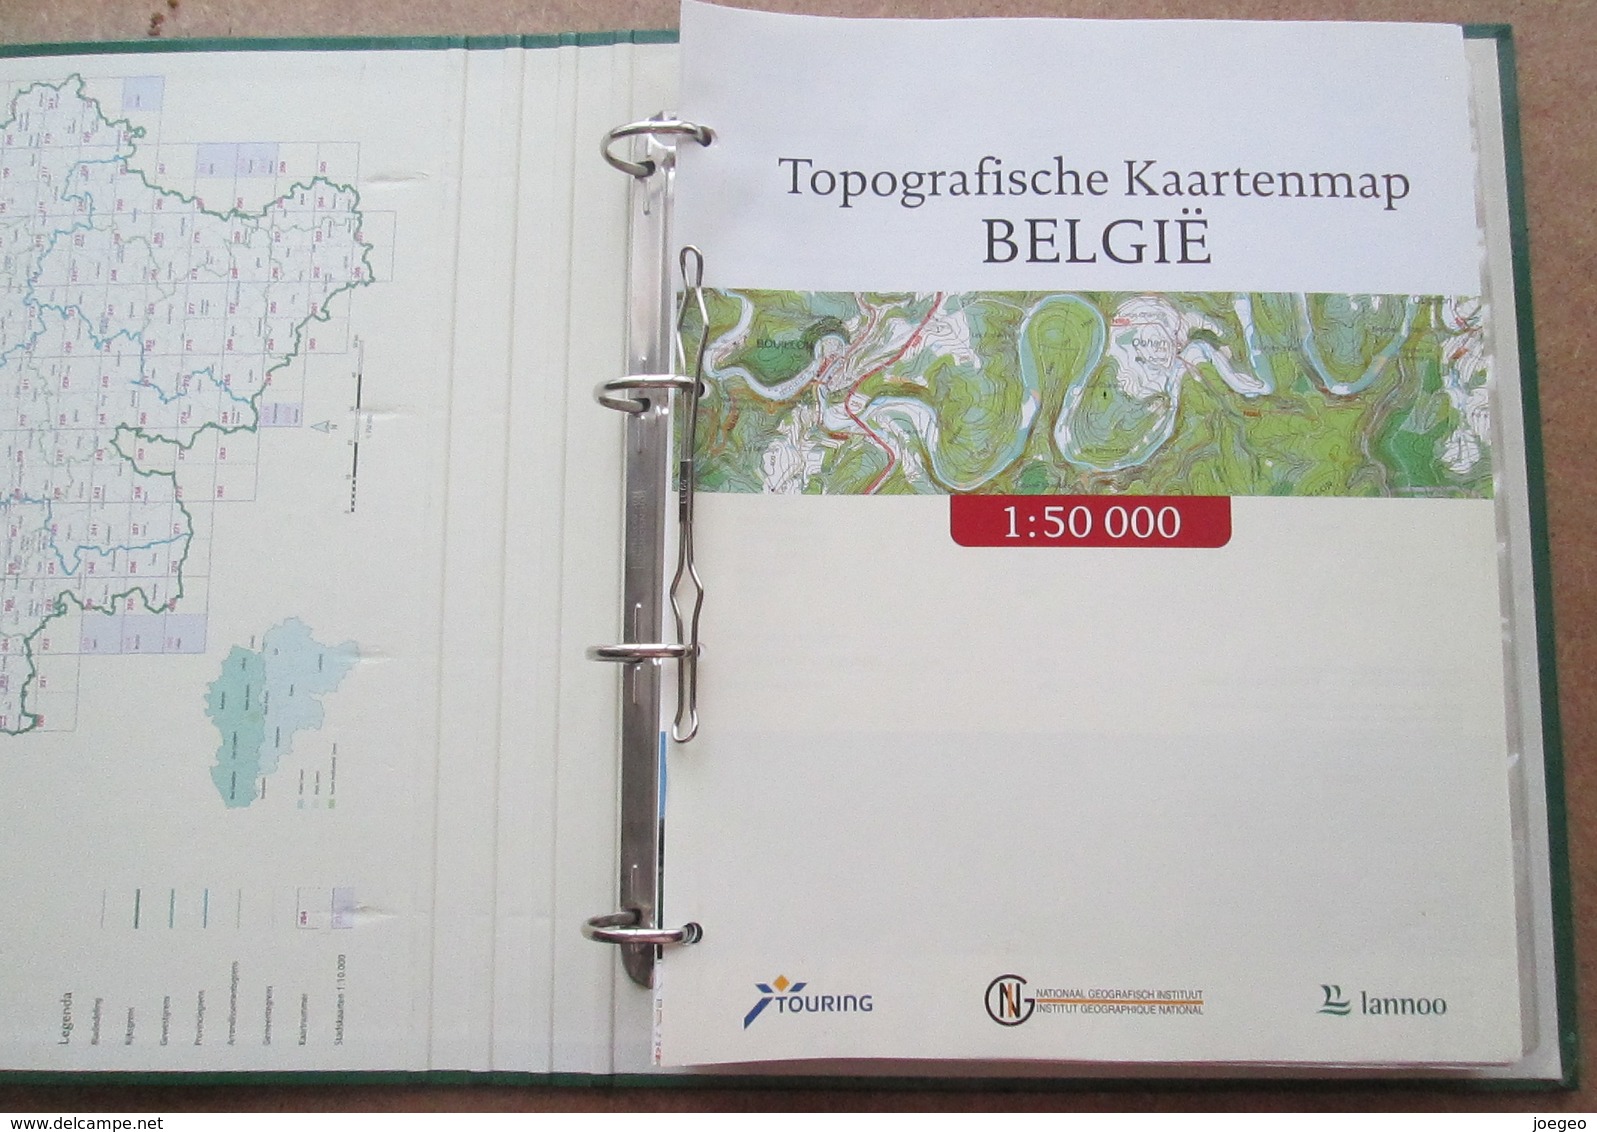 Topografische Kaartenmap België Met 1500 Toeristische Uitstapideeën / Touring Lannoo - Praktisch